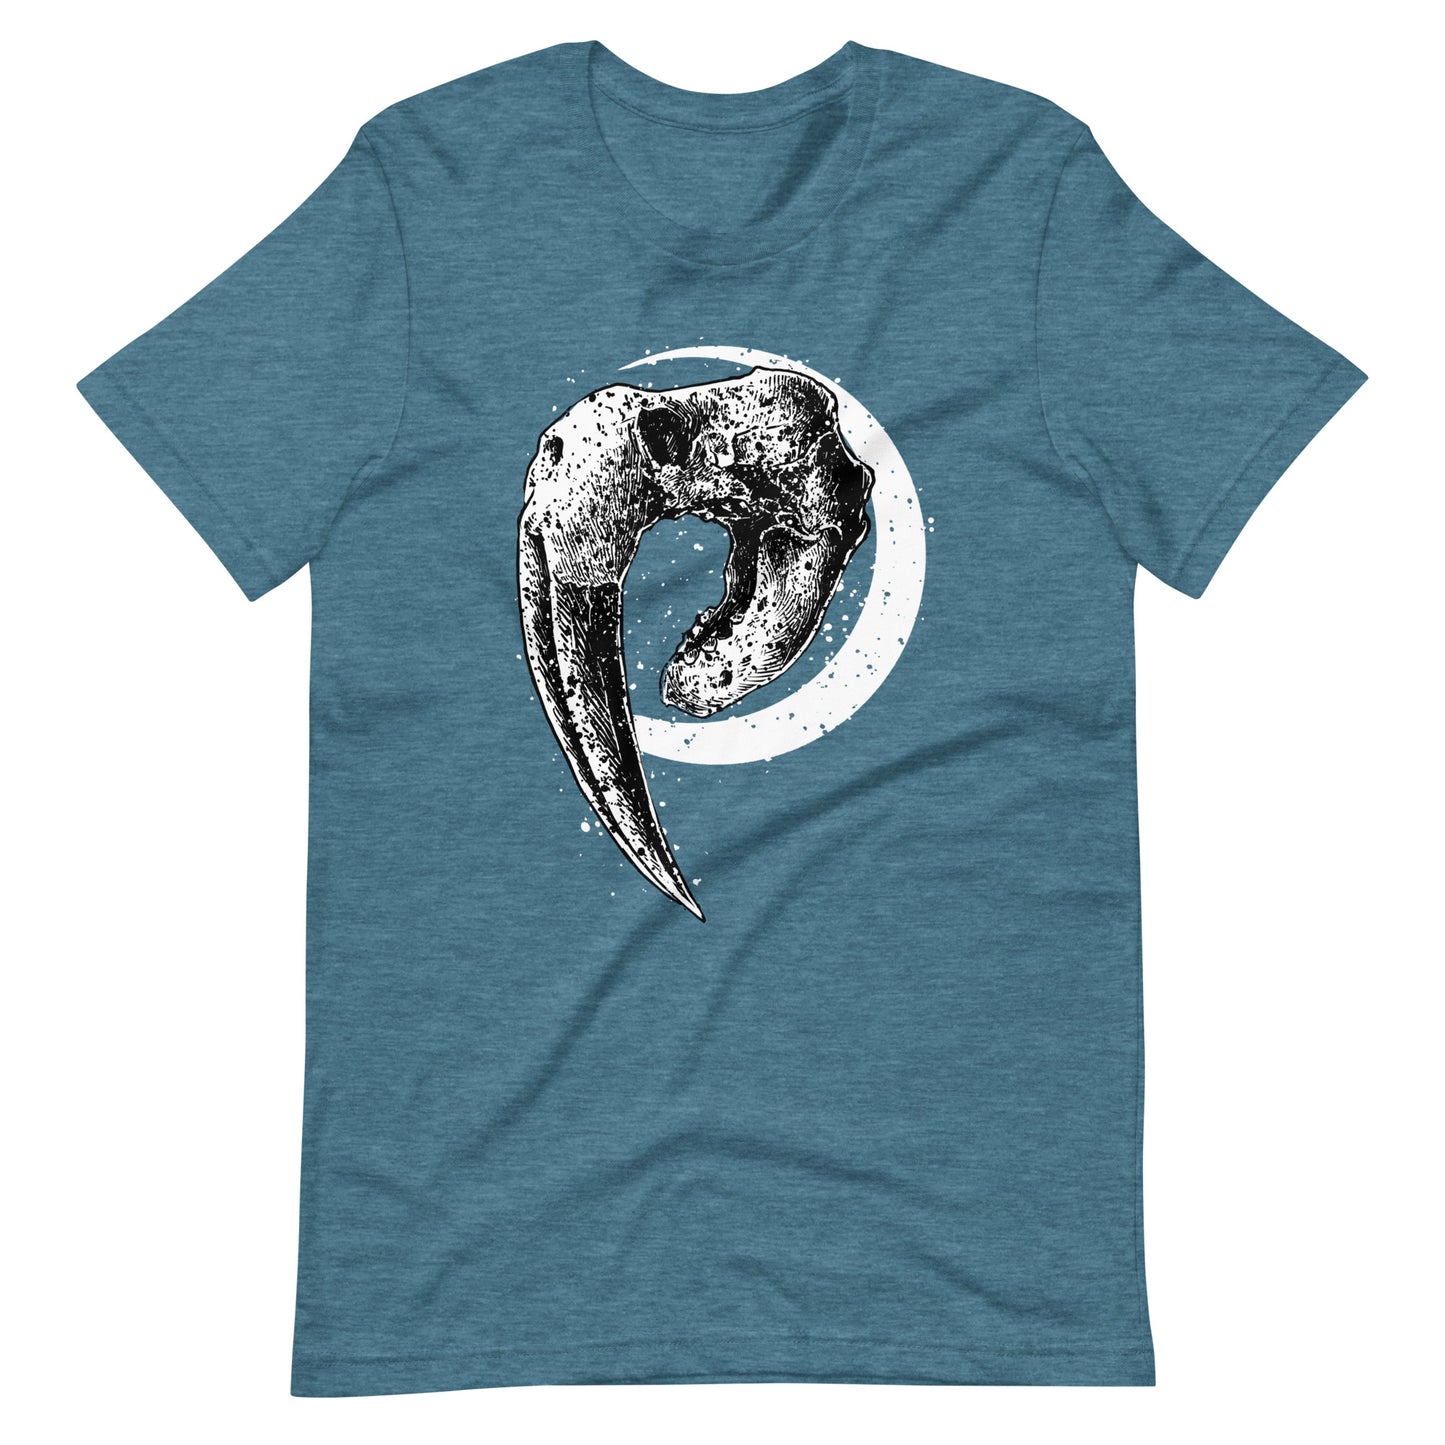 Walrus - Men's t-shirt - Heather Deep Teal Front